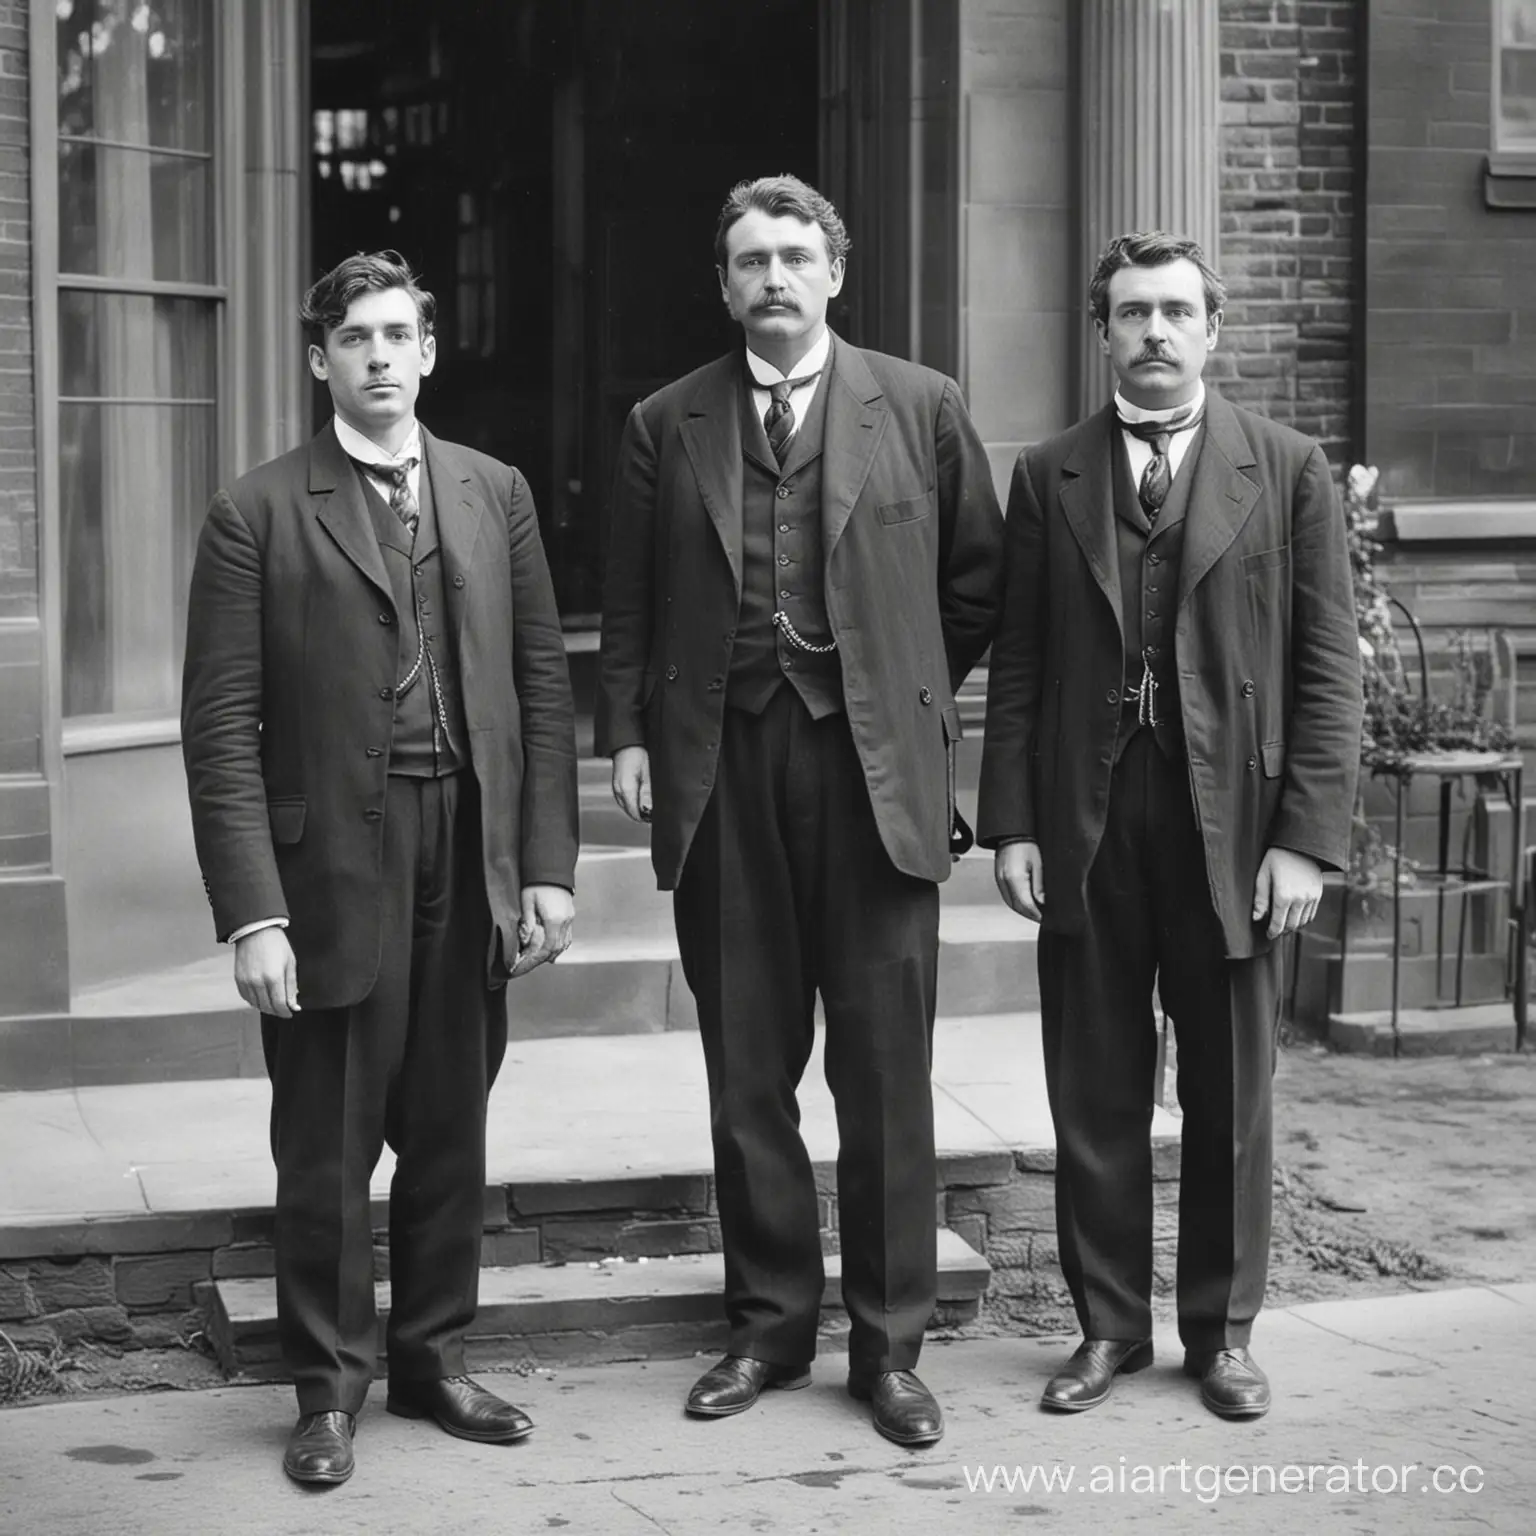 Three-Victorian-Gentlemen-in-Business-Attire